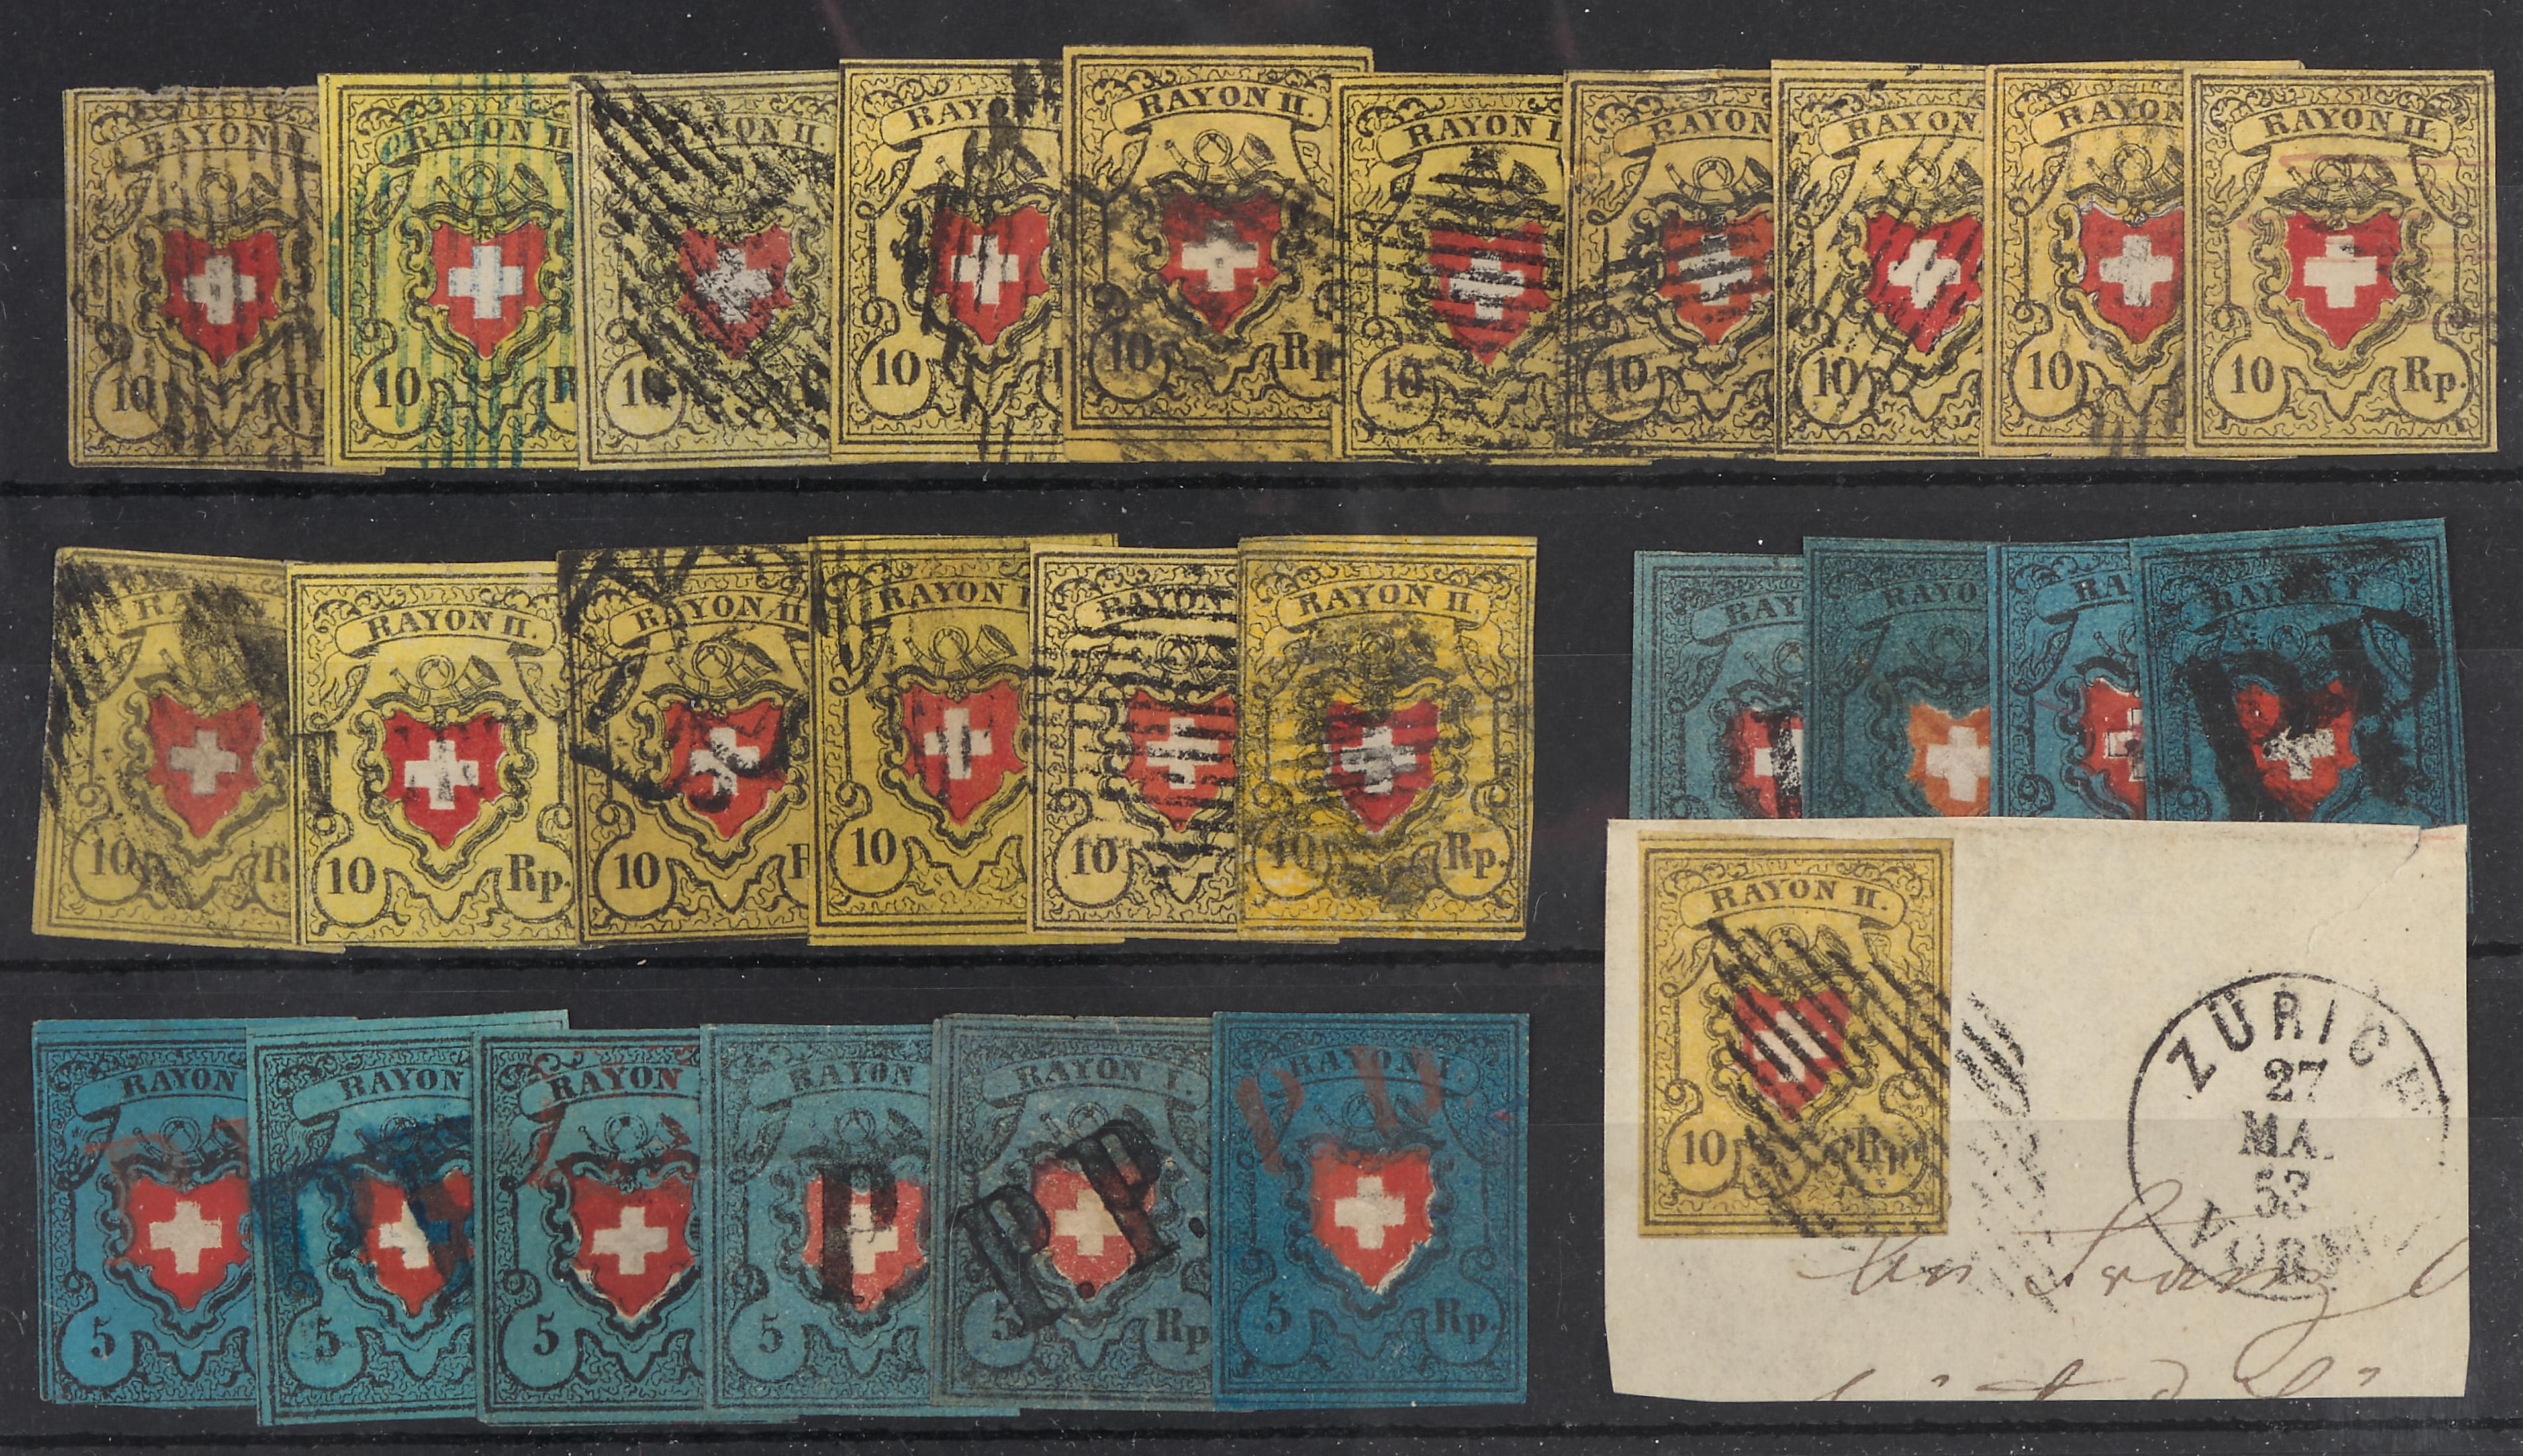 gestempelt/*/**/(*) - Sehr reichh. Lagerbestand Schweiz ca. 1850/1960 tls.  vielfach gesteckt, - Briefmarken 2023/12/14 - Starting bid: EUR 4,000 -  Dorotheum